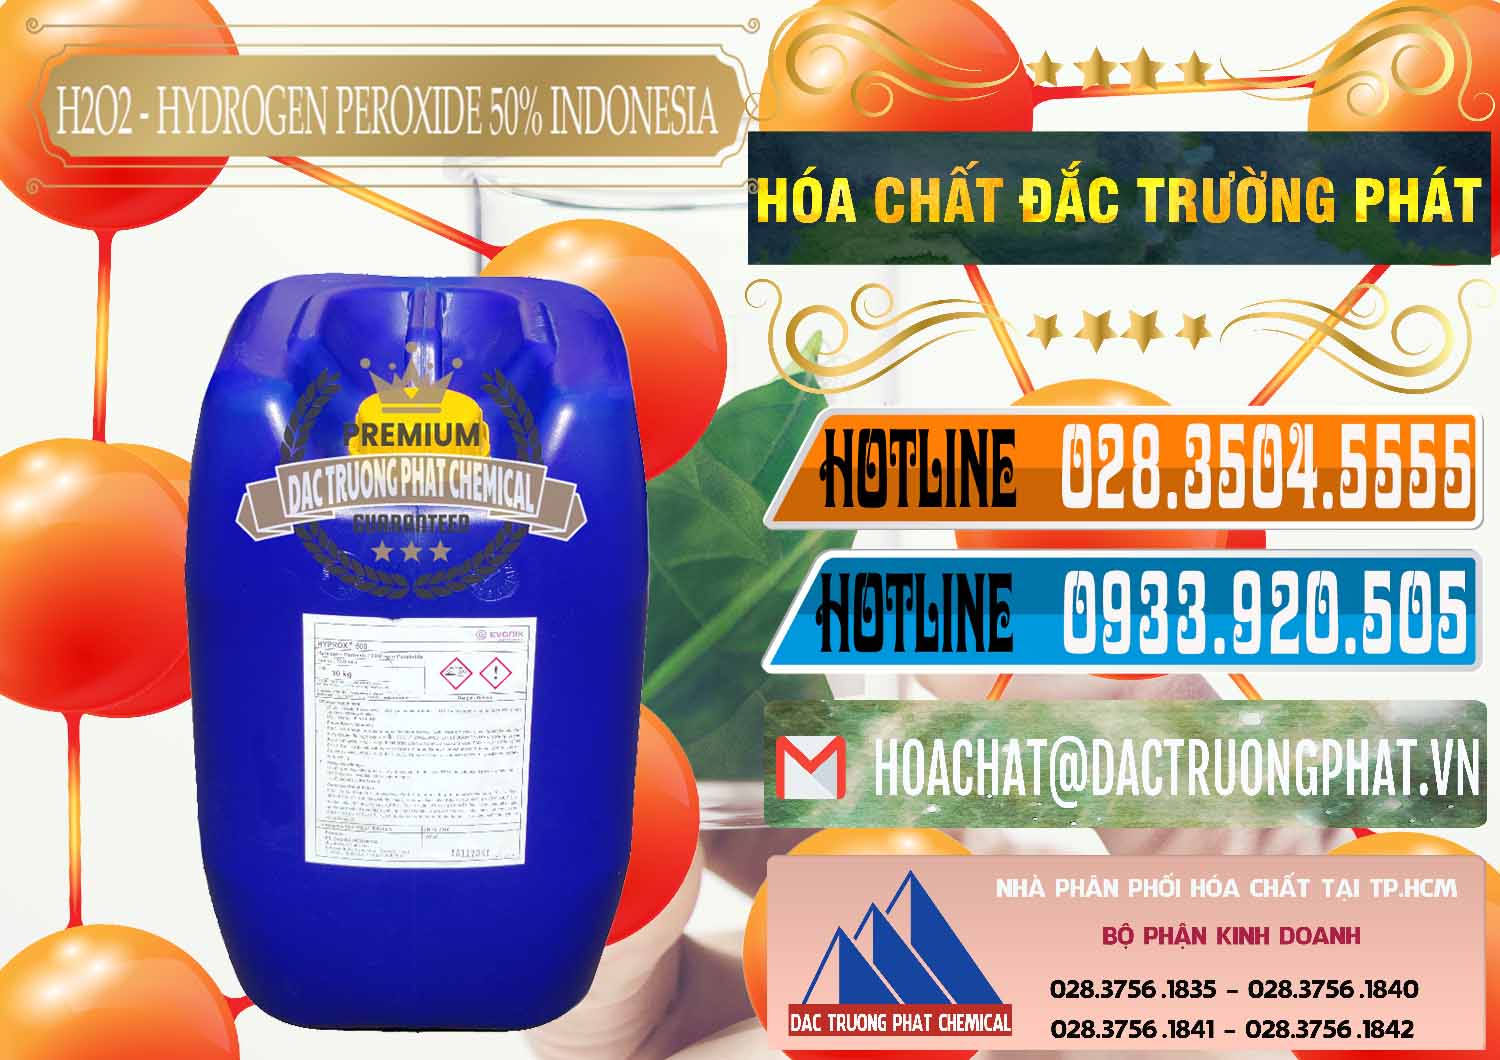 Đơn vị chuyên bán _ cung ứng H2O2 - Hydrogen Peroxide 50% Evonik Indonesia - 0070 - Công ty chuyên cung ứng & phân phối hóa chất tại TP.HCM - stmp.net